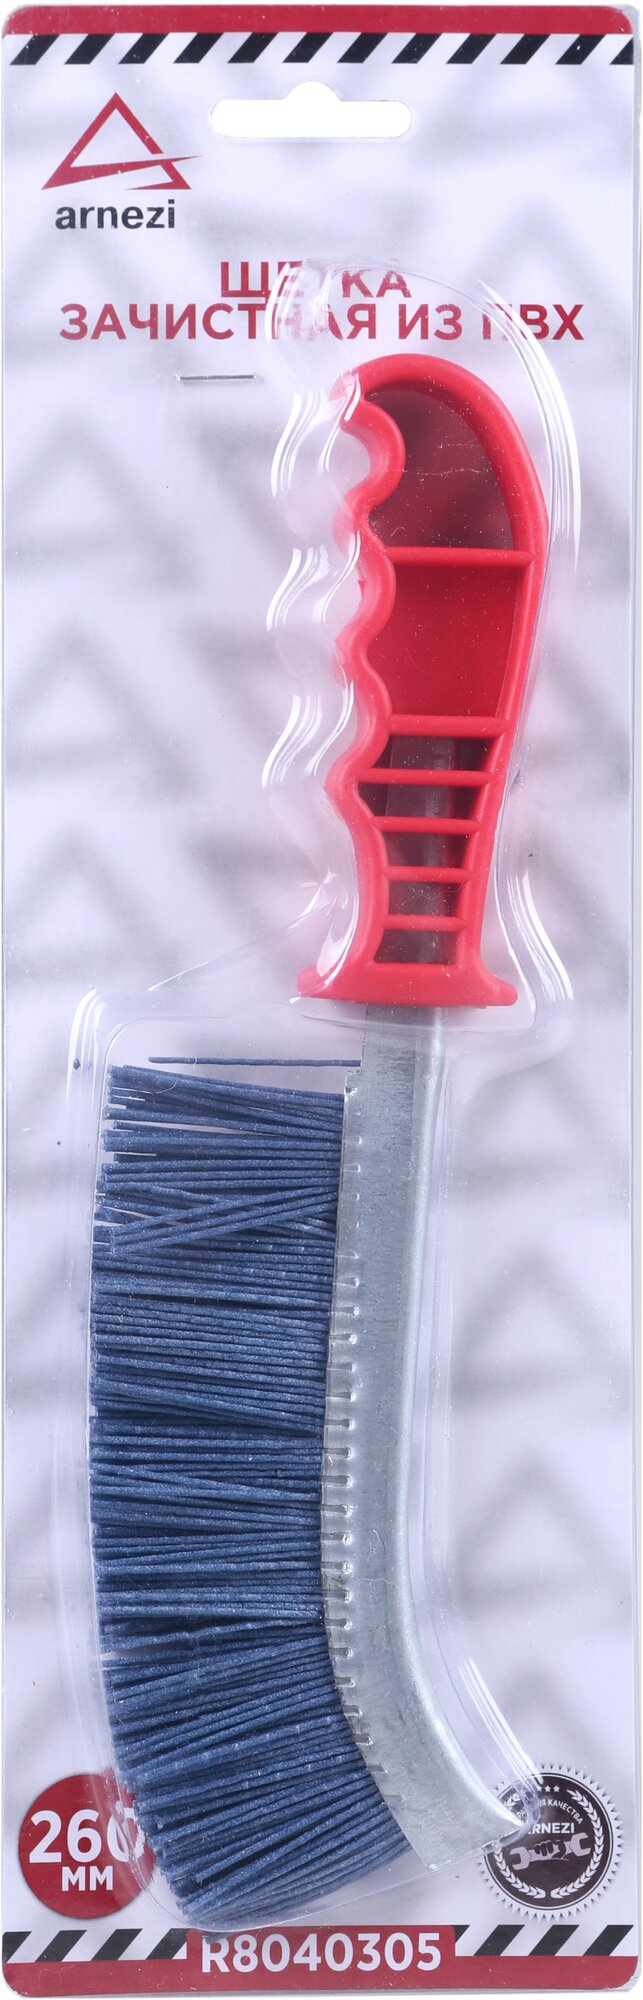 Щетка зачистная ПВХ с пластмассовой ручкой ARNEZI R8040305 (Производитель: ARNEZI R8040305)